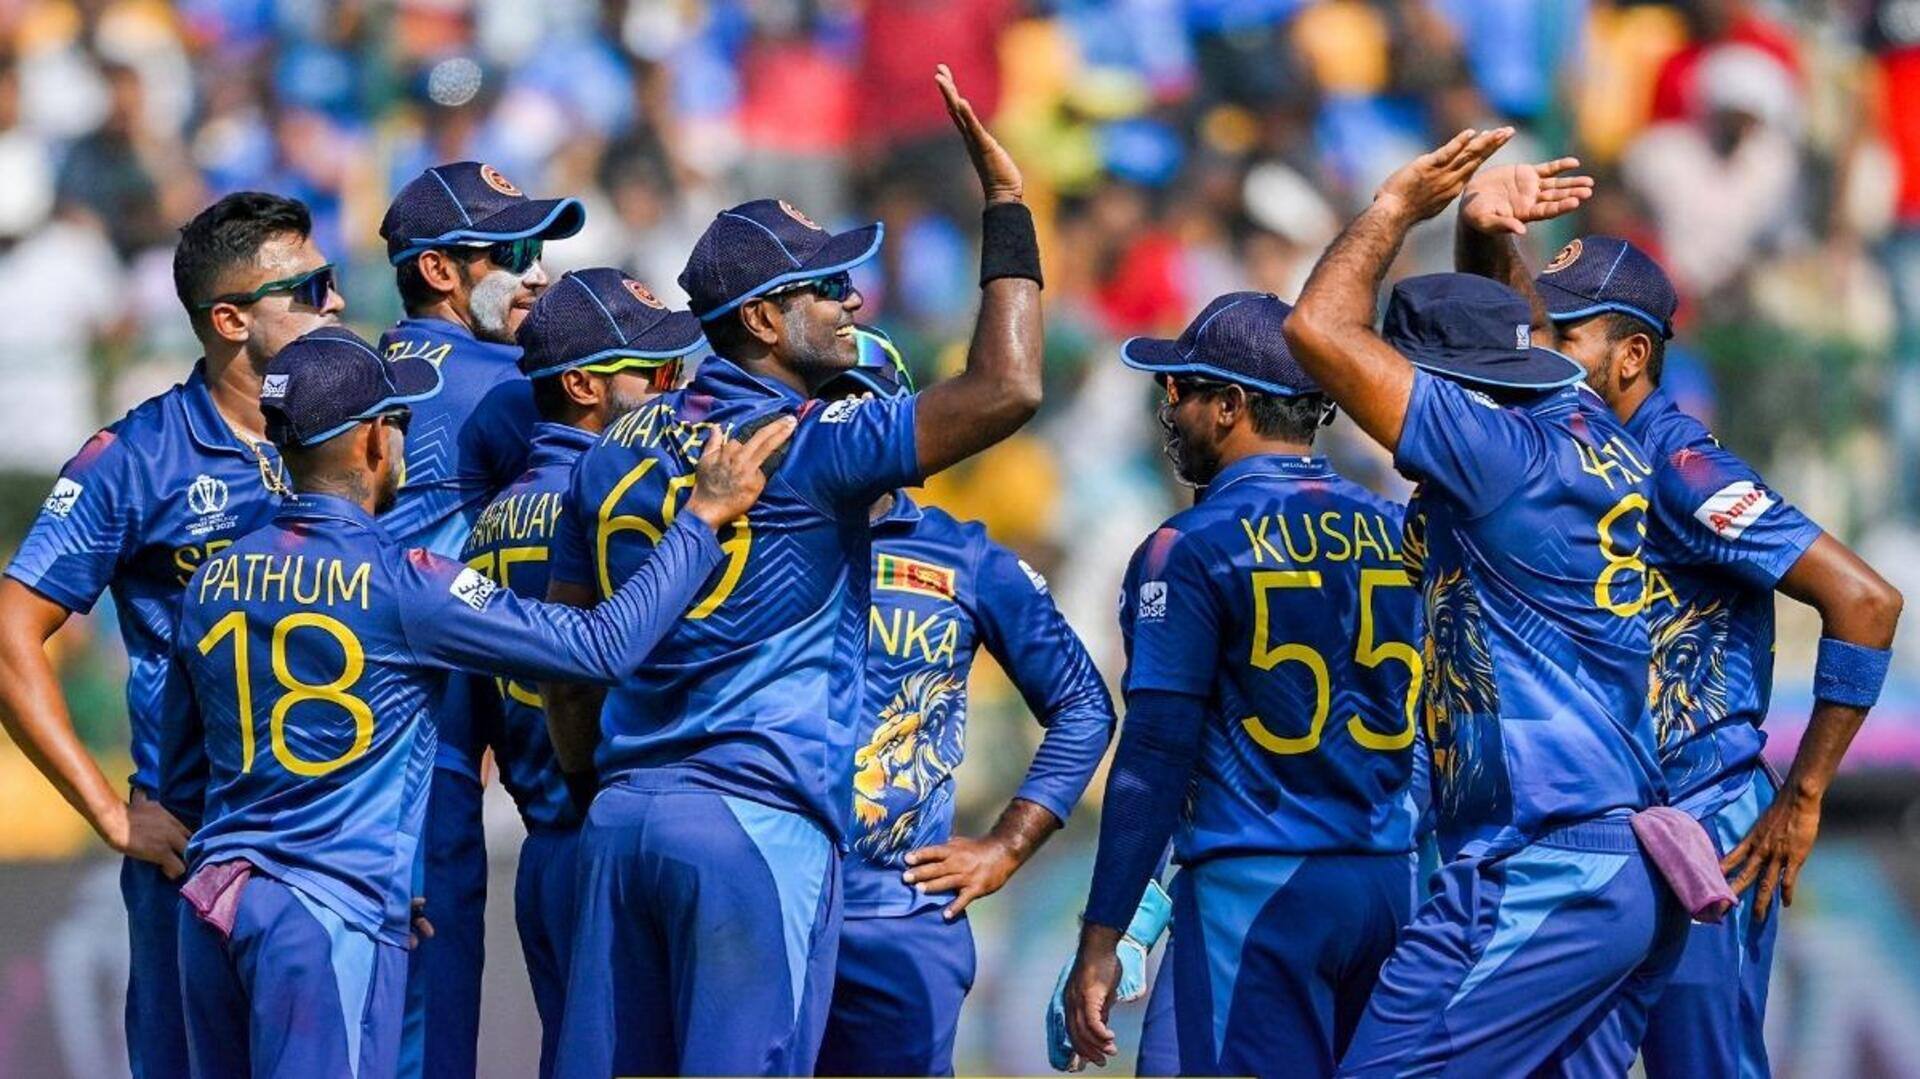 श्रीलंका ने इंग्लैंड को लगातार 5वें वनडे विश्व कप में हराया, हासिल की दूसरी बड़ी जीत